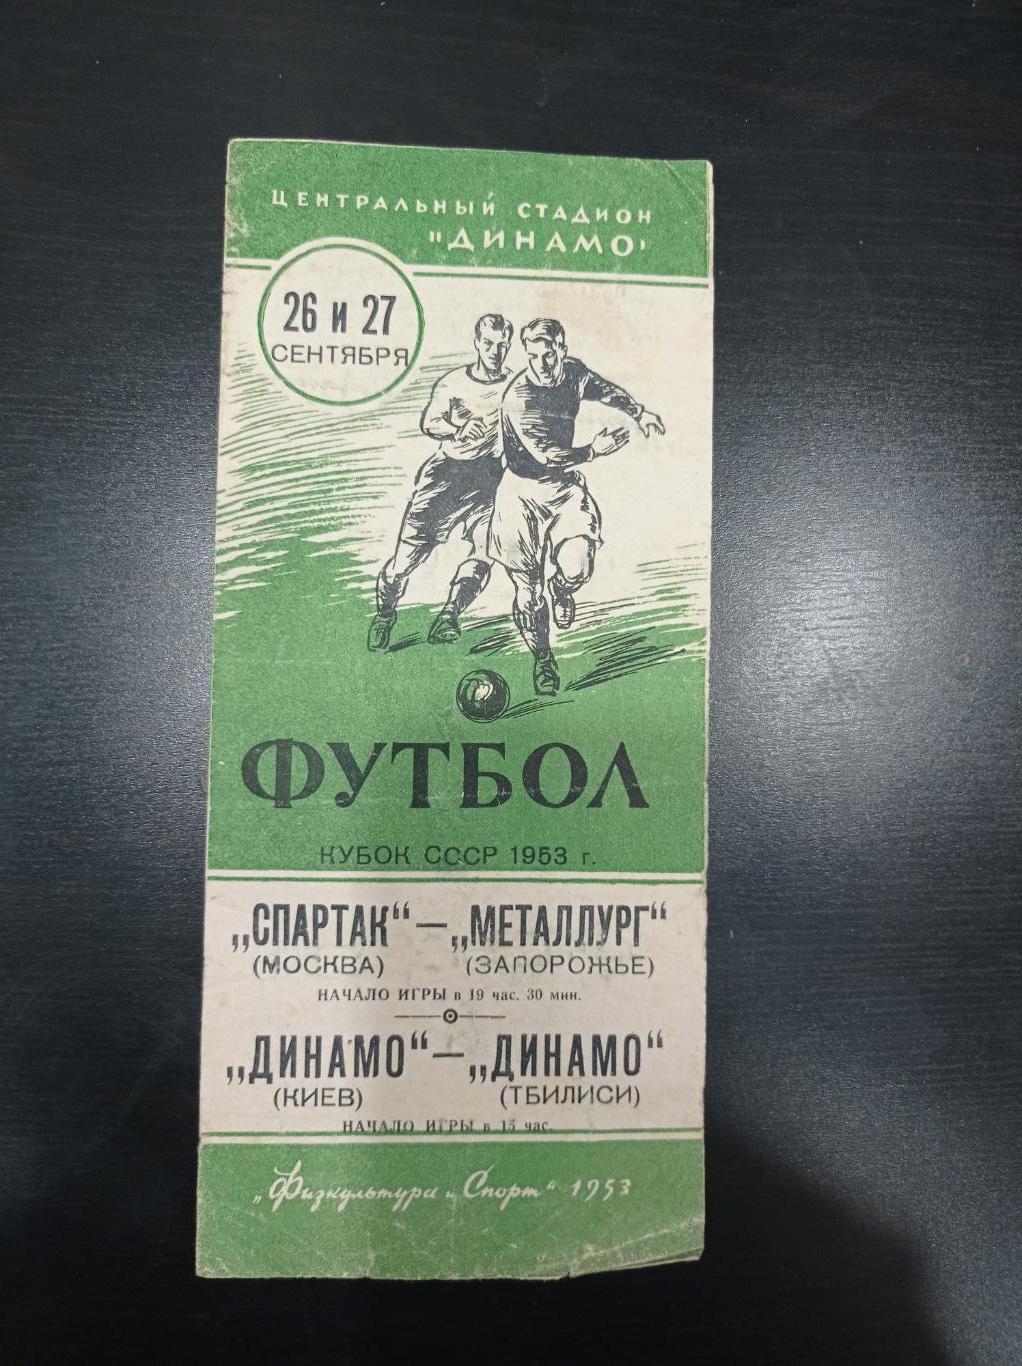 Спартак - Металлург/Динамо (Киев) - Динамо (Тбилиси) 1953